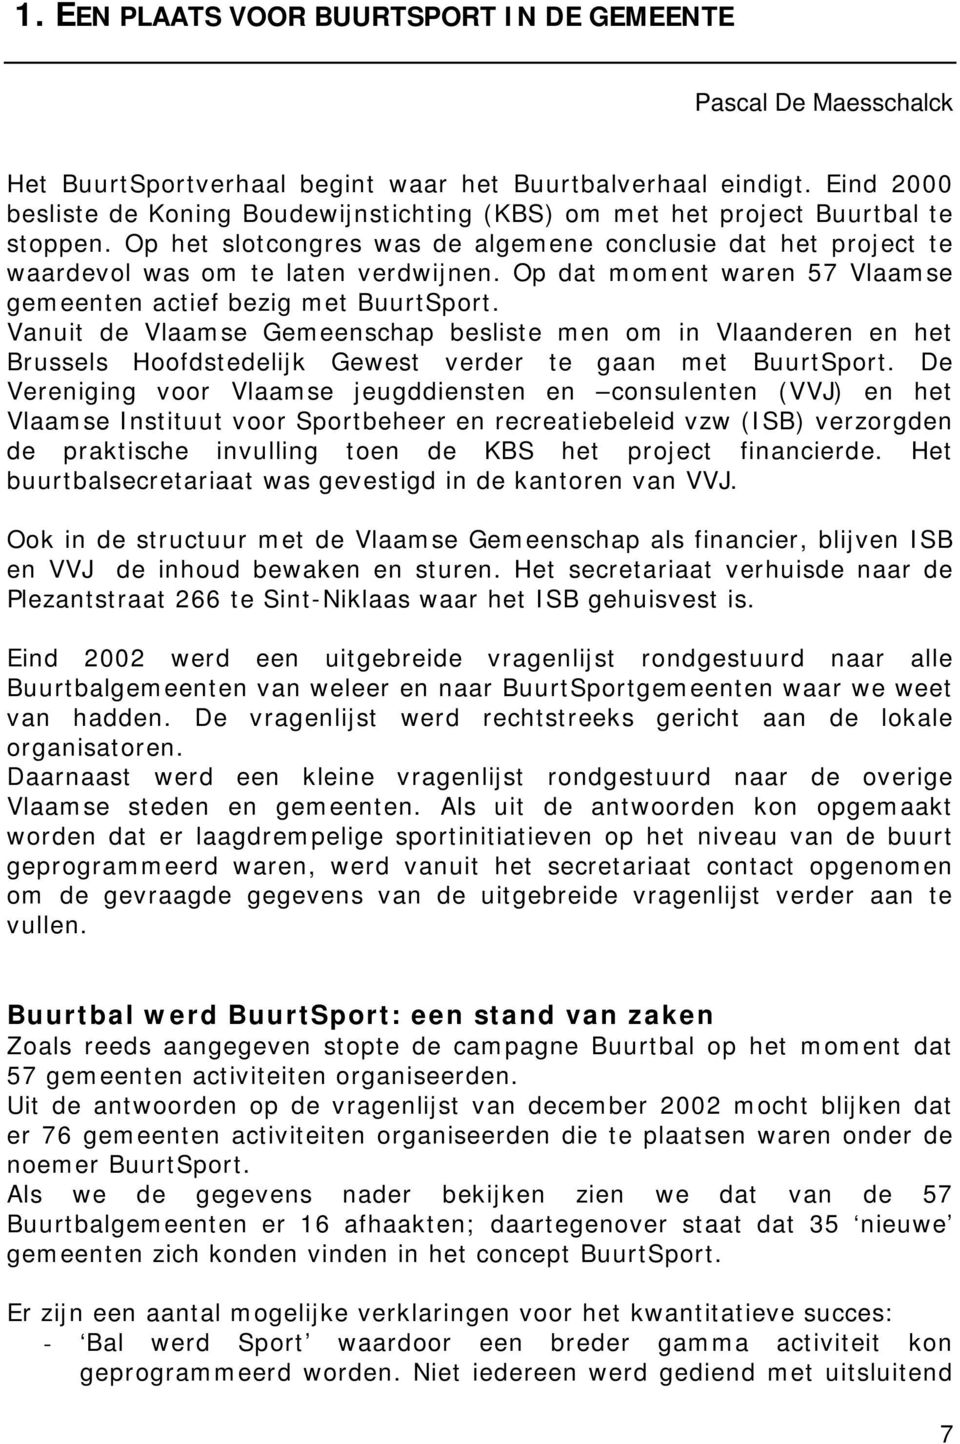 Op dat moment waren 57 Vlaamse gemeenten actief bezig met BuurtSport. Vanuit de Vlaamse Gemeenschap besliste men om in Vlaanderen en het Brussels Hoofdstedelijk Gewest verder te gaan met BuurtSport.